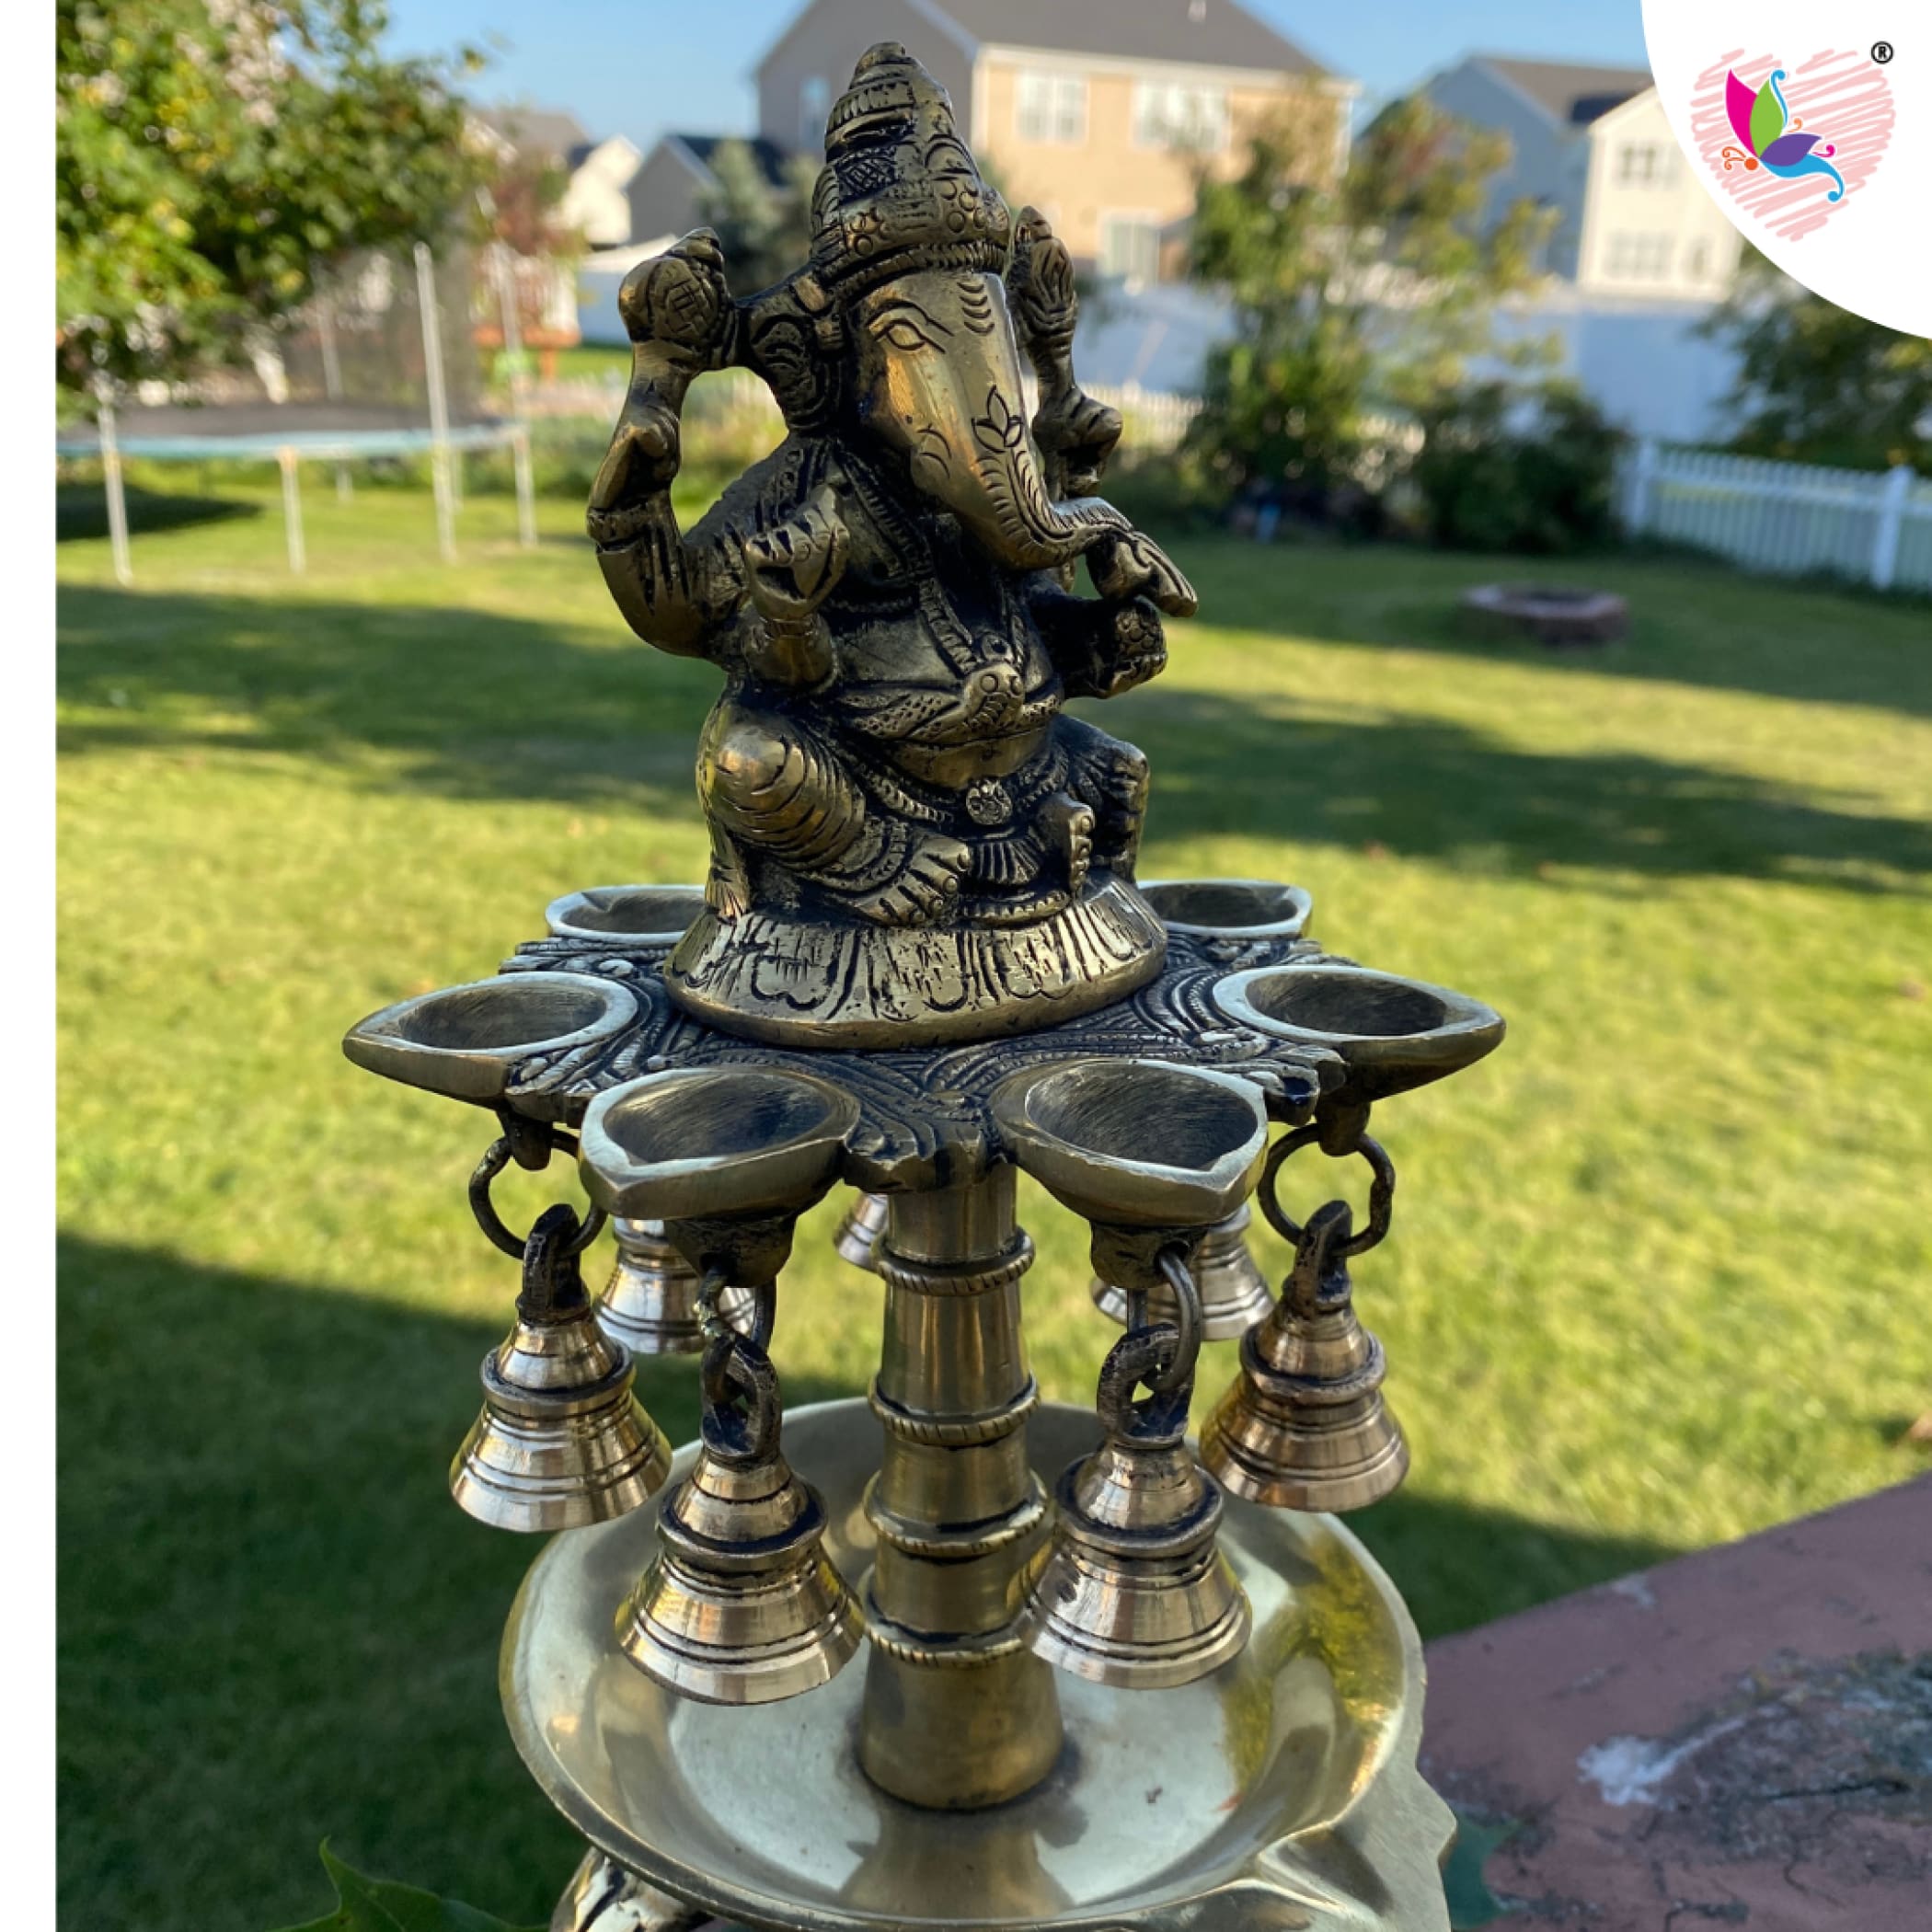 Ganesh brass oil tall diya for home decor samai diwali lamp